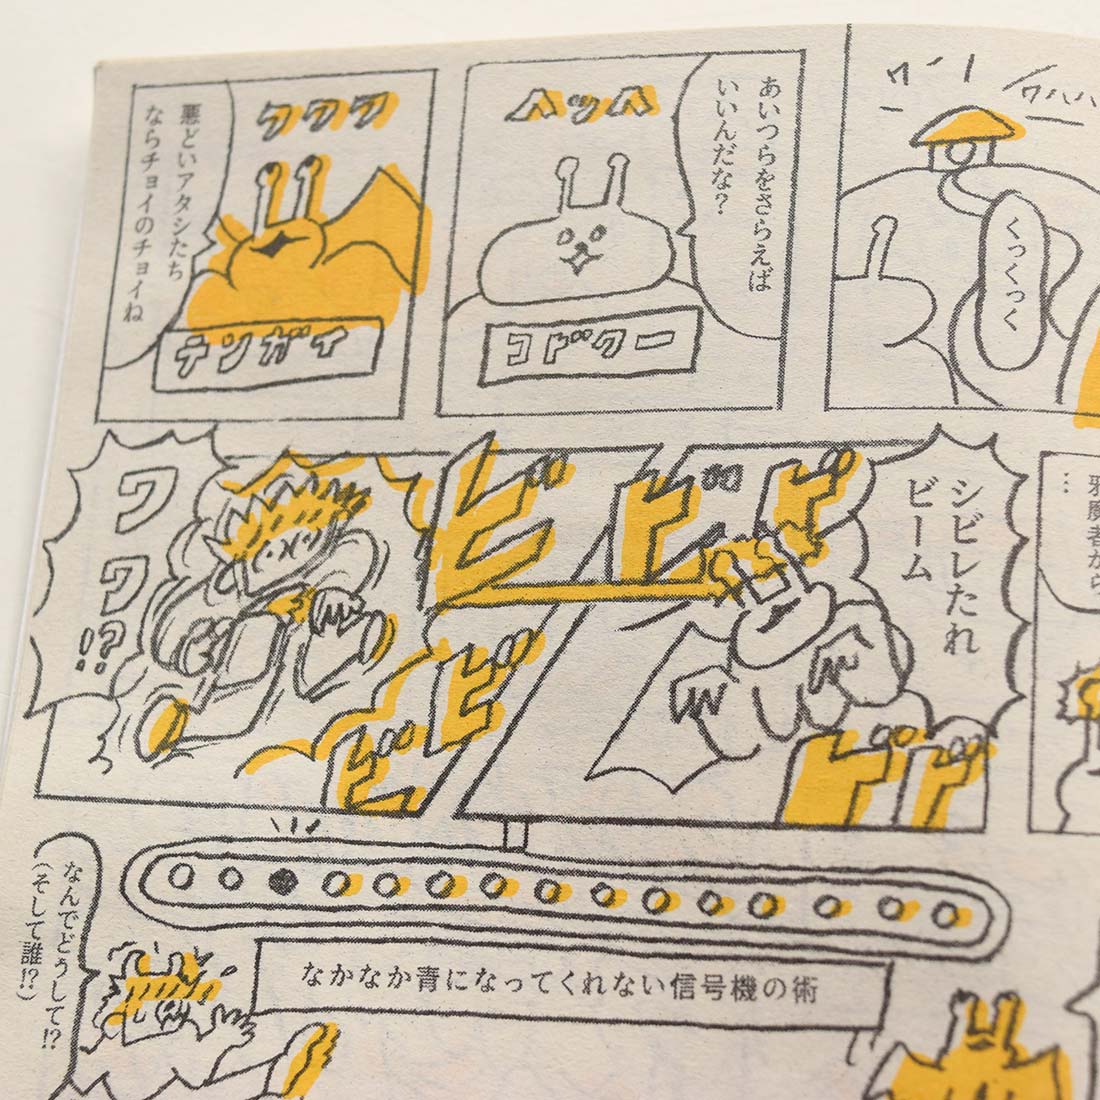 comixシリーズ「DOJO(ドージョー)×10000(イチマーン)」仲村直